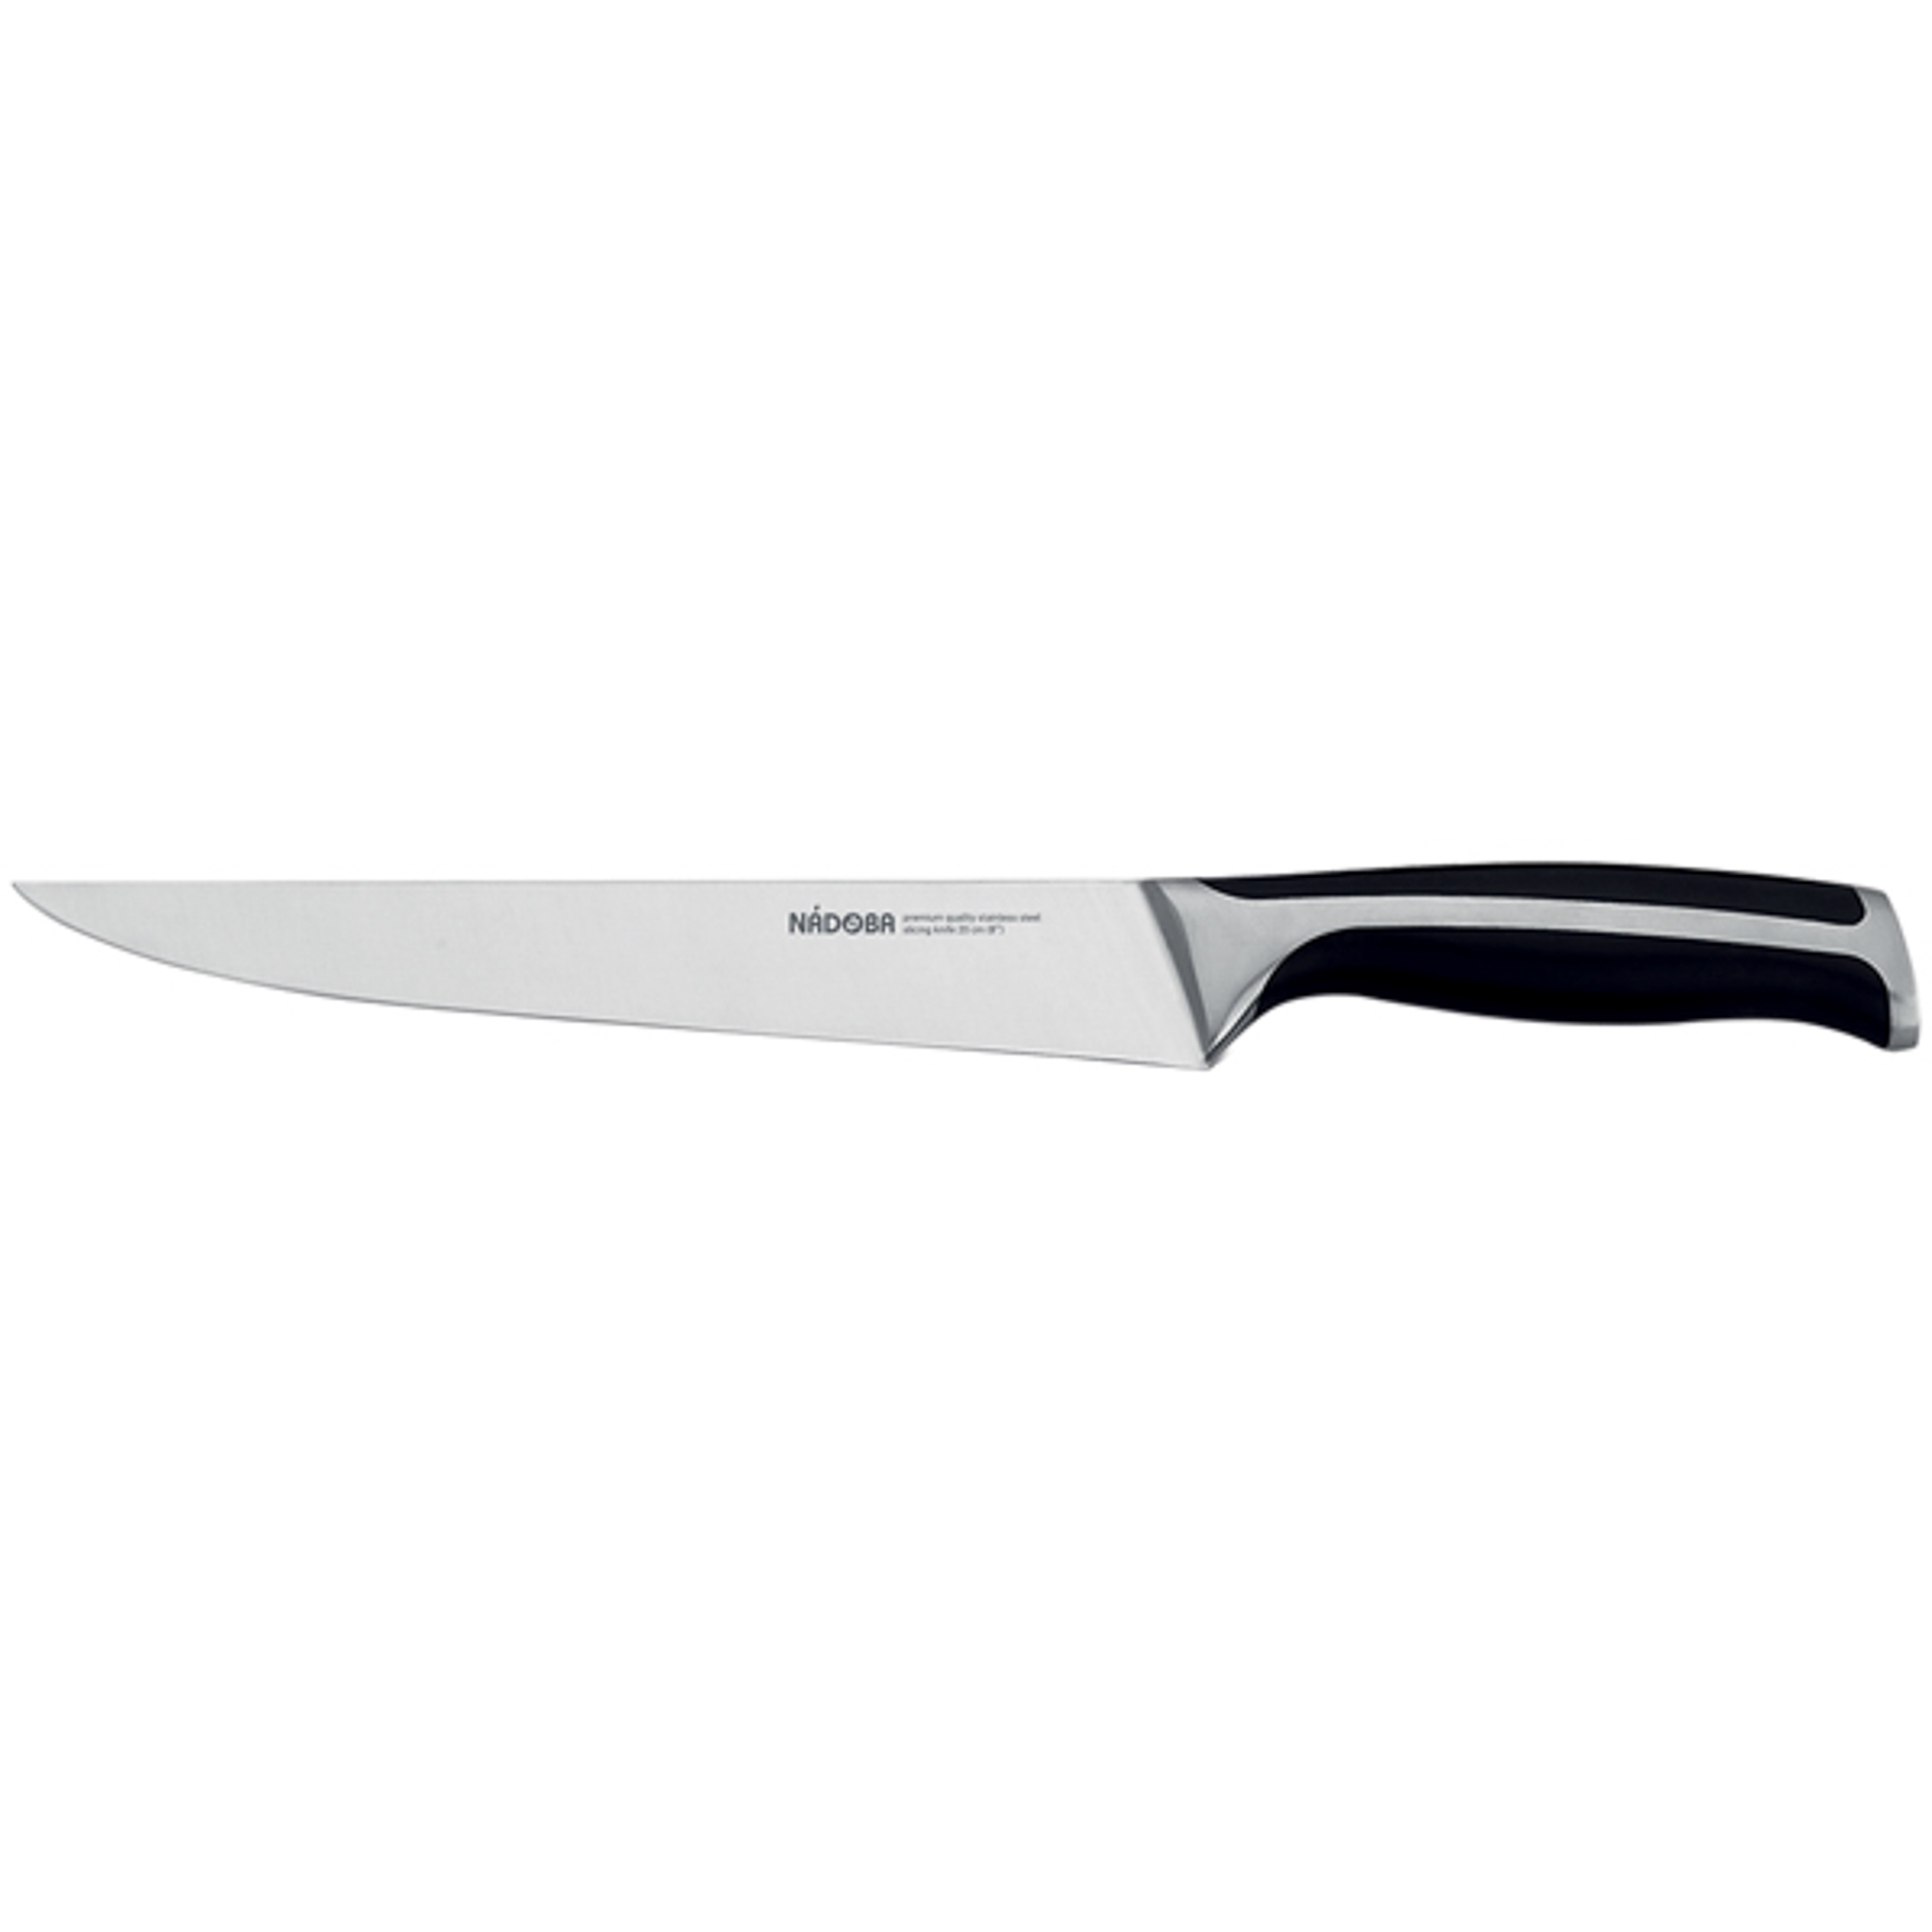 Нож разделочный 20 см Nadoba ursa нож разделочный nadoba blanca 20 см